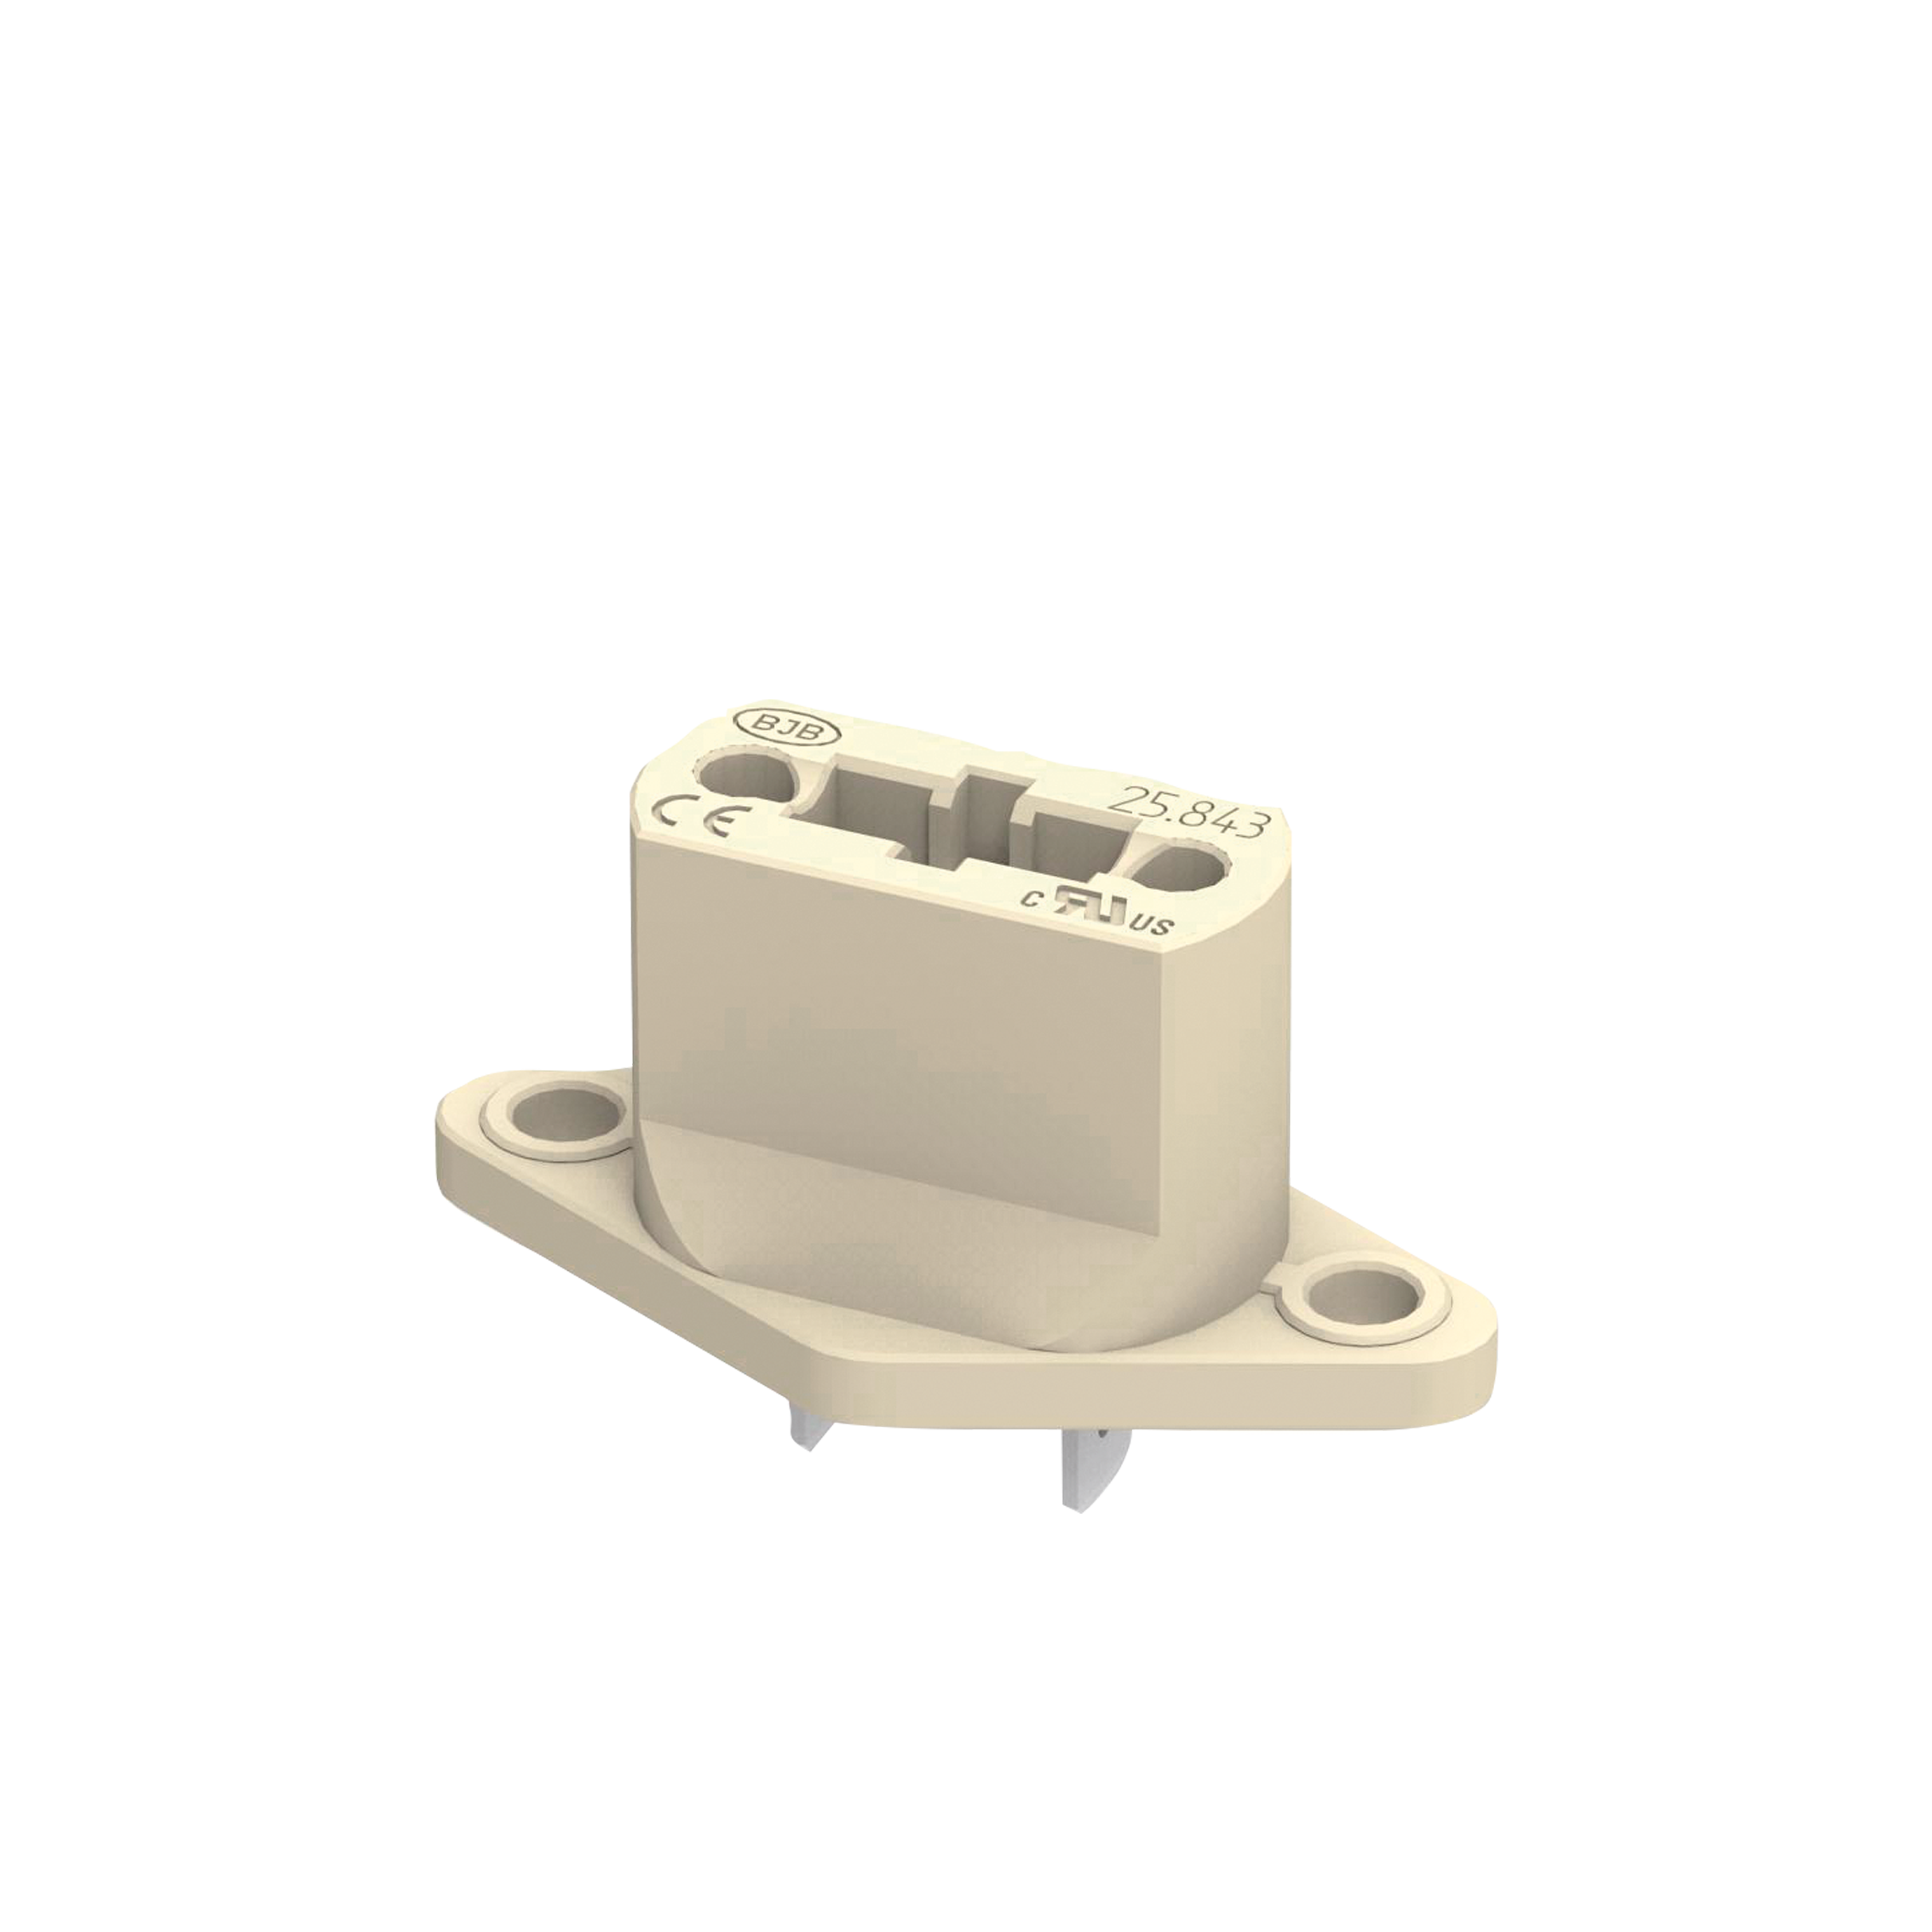 G9 lamp holder for microwaves